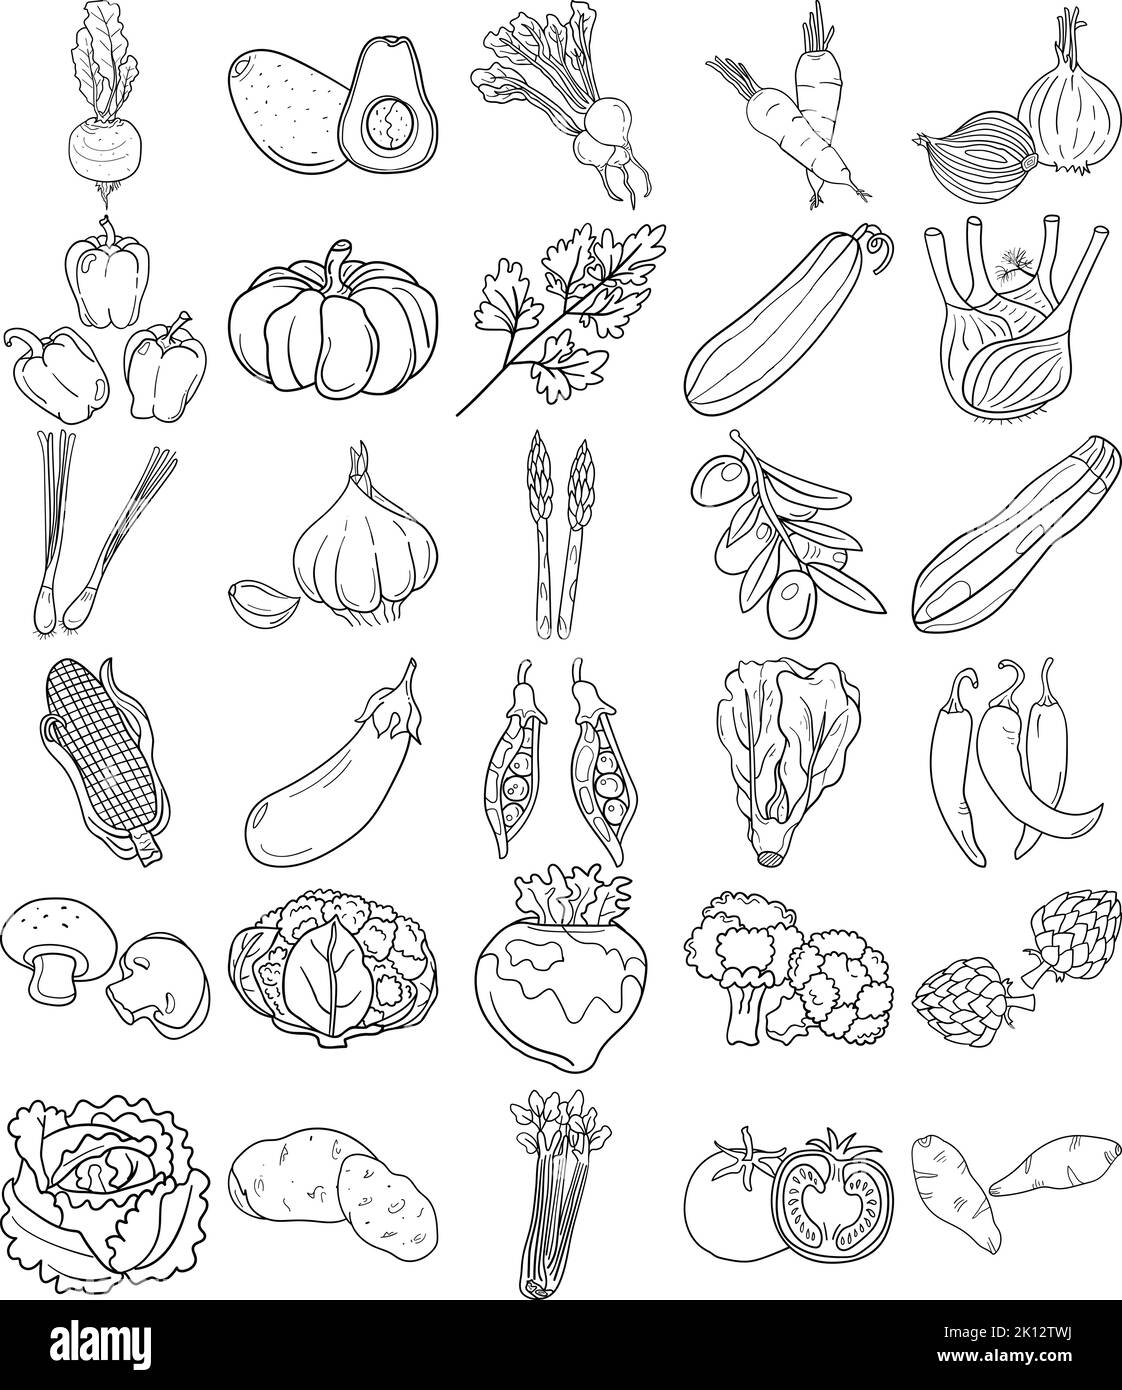 Handgezeichnetes Gemüse Doodle Line Art Outline Set Mit Avocado, Artischocke, Spargel, Mais, Pilz, Brokkoli, Blumenkohl, Gurke, Glockenpfepp Stock Vektor